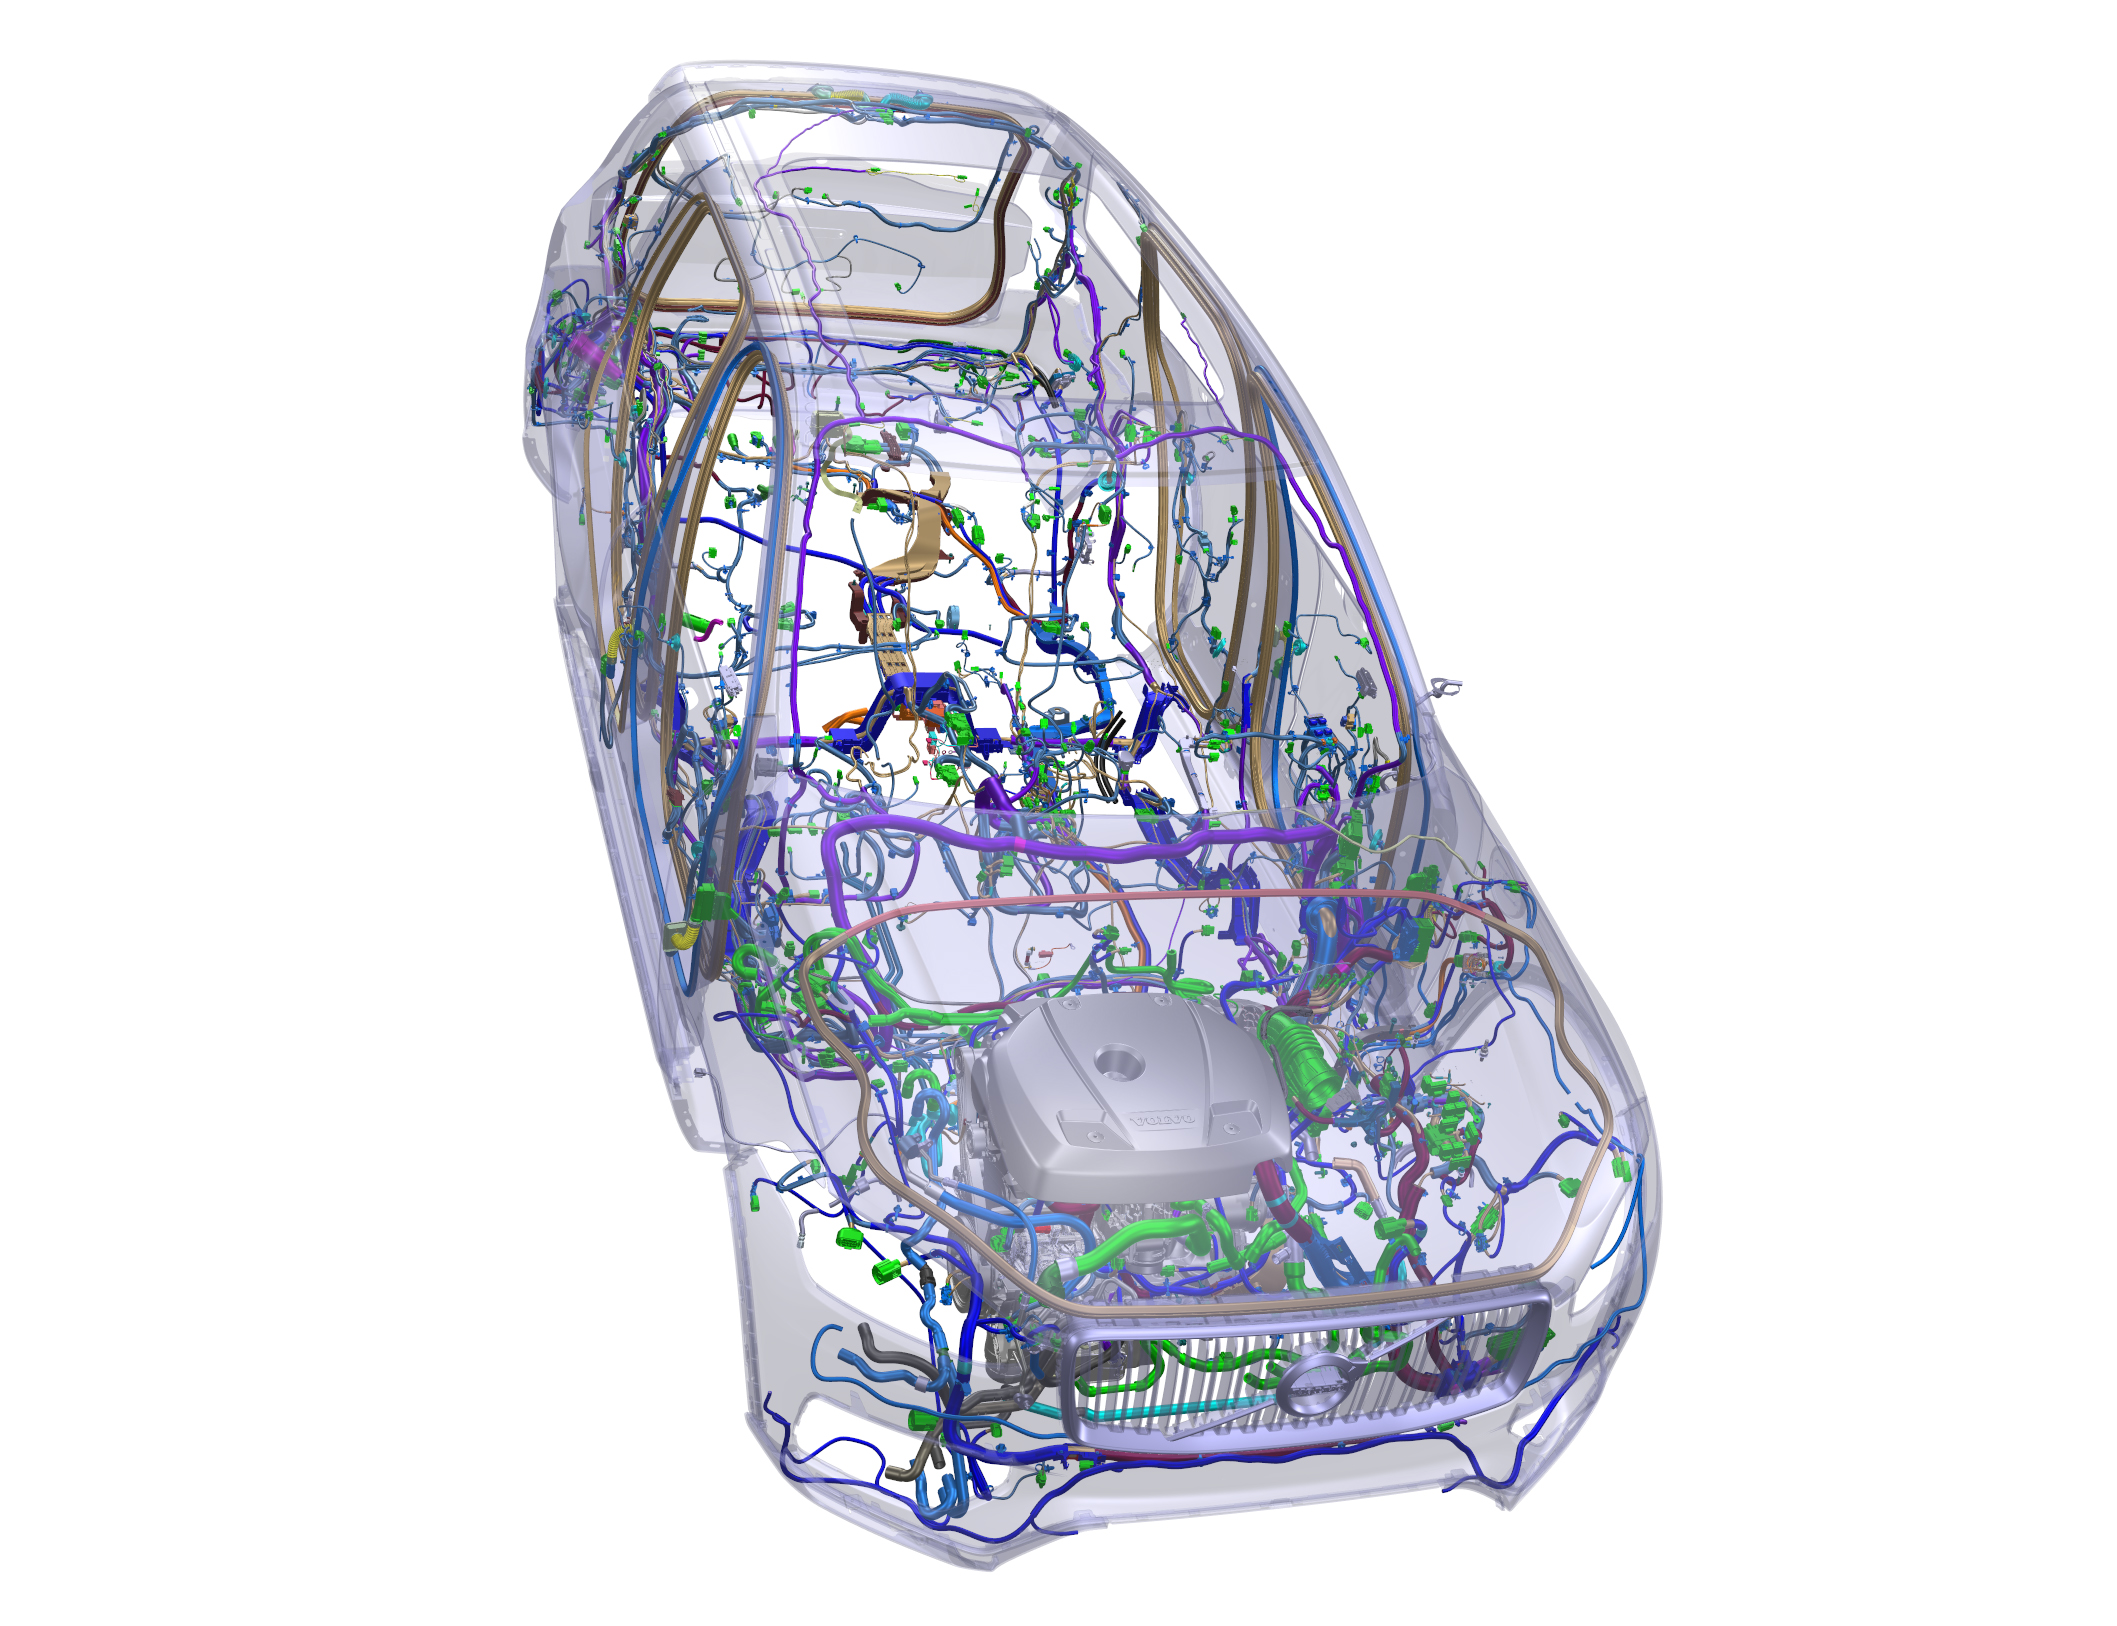 Mit unserem Tool IPS Cable Simulation lassen sich die vielen unterschiedlichen Kabel, welche beispielsweise in Autos eingesetzt werden, simulieren.